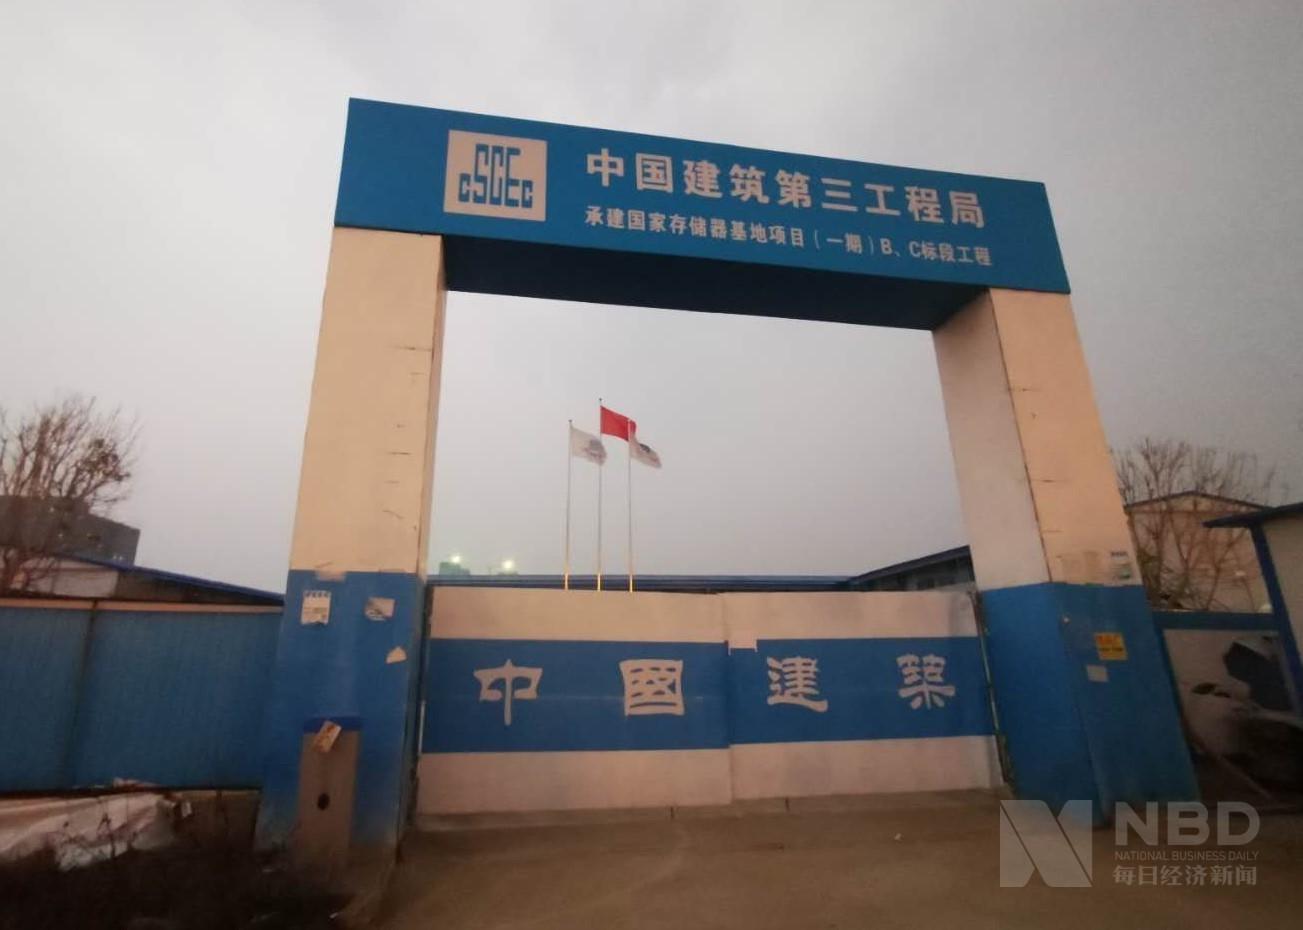 一天也不耽误的标语就树立在长江存储大门对面,但国家存储器基地